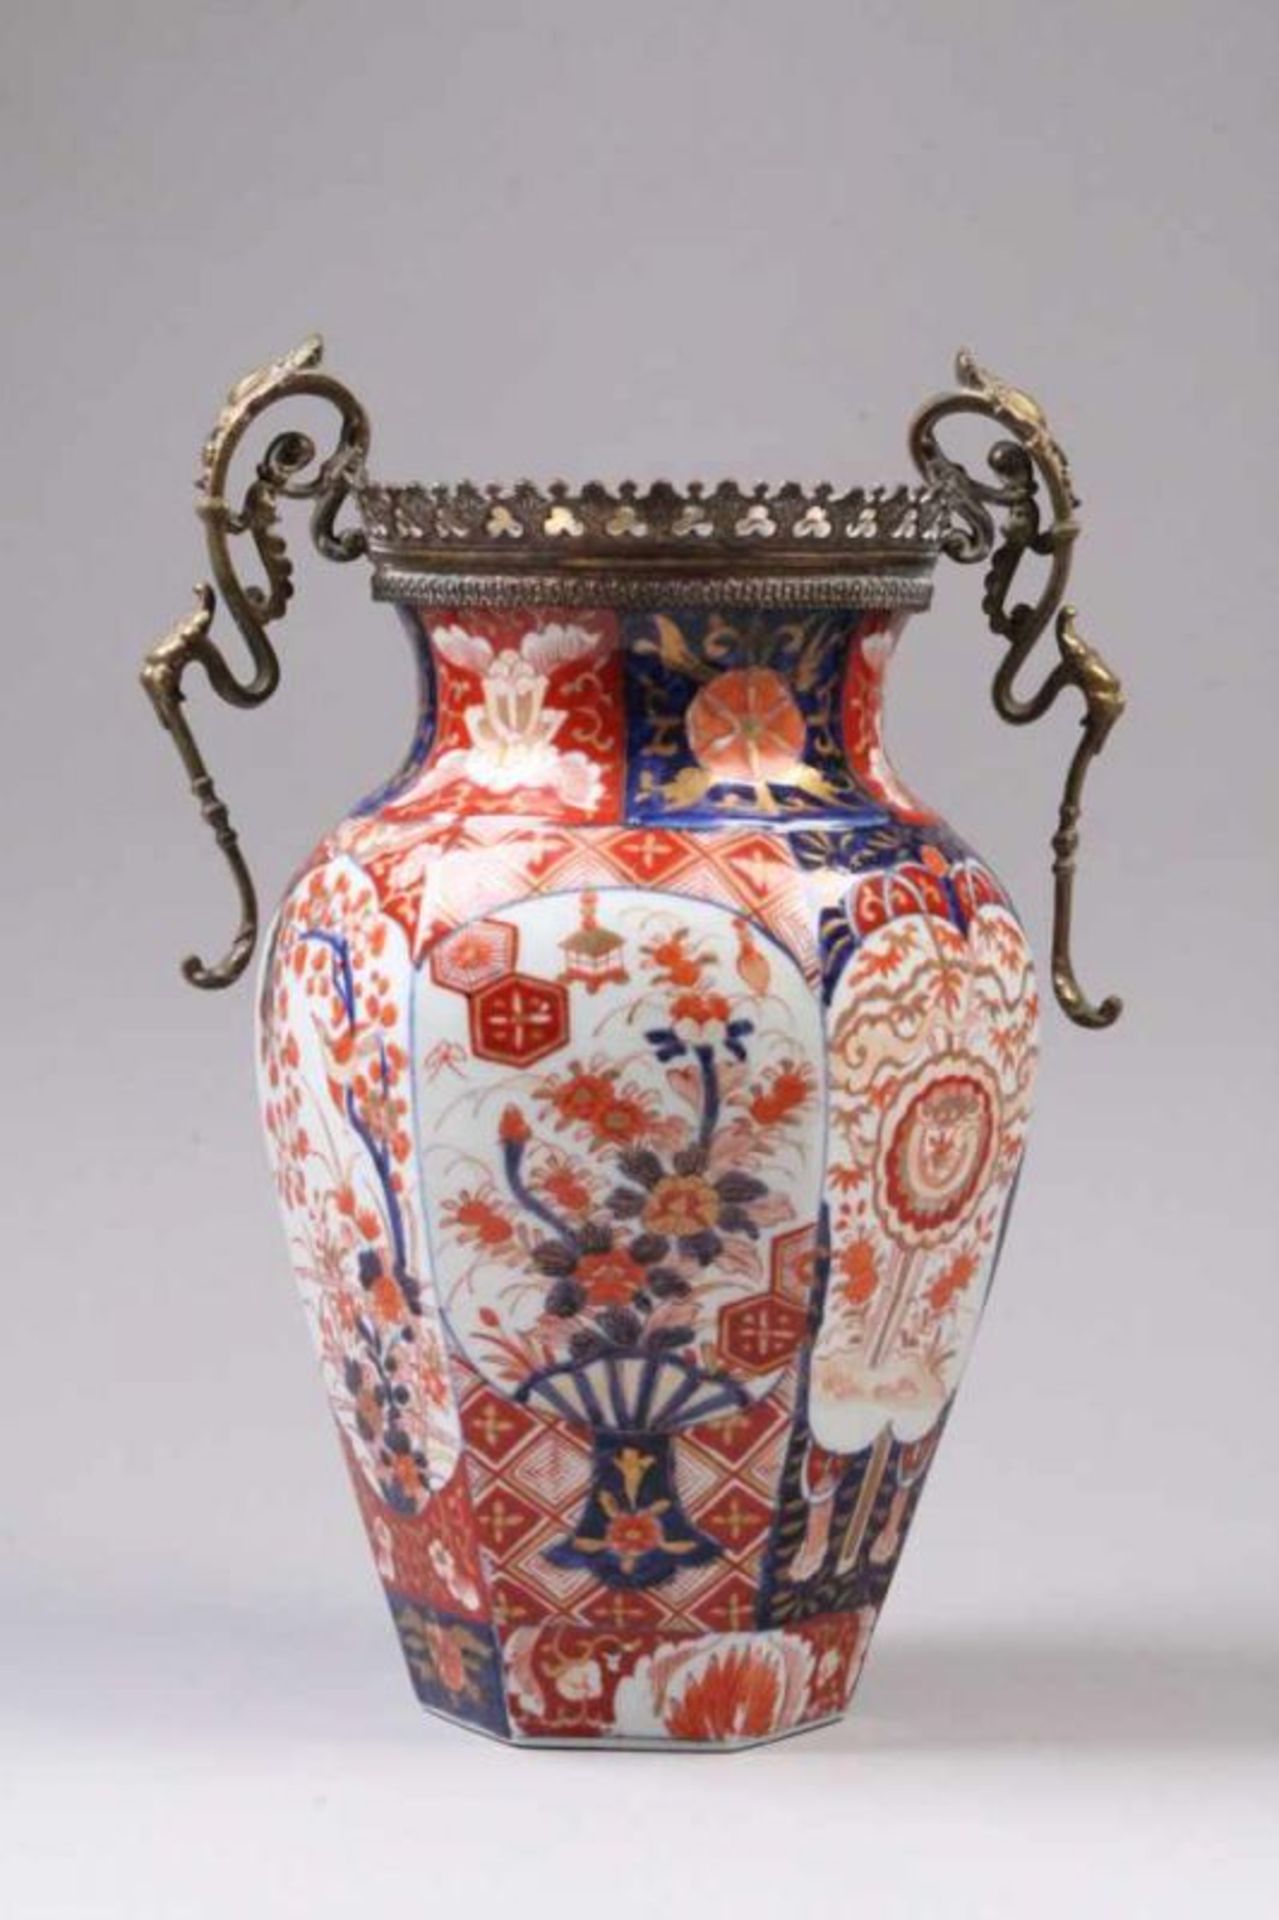 Satsuma Vase.Japan, Ende 19. Jh. Hexagonale Form, reiche Dekoration. Vasenabschluss und Henkel aus